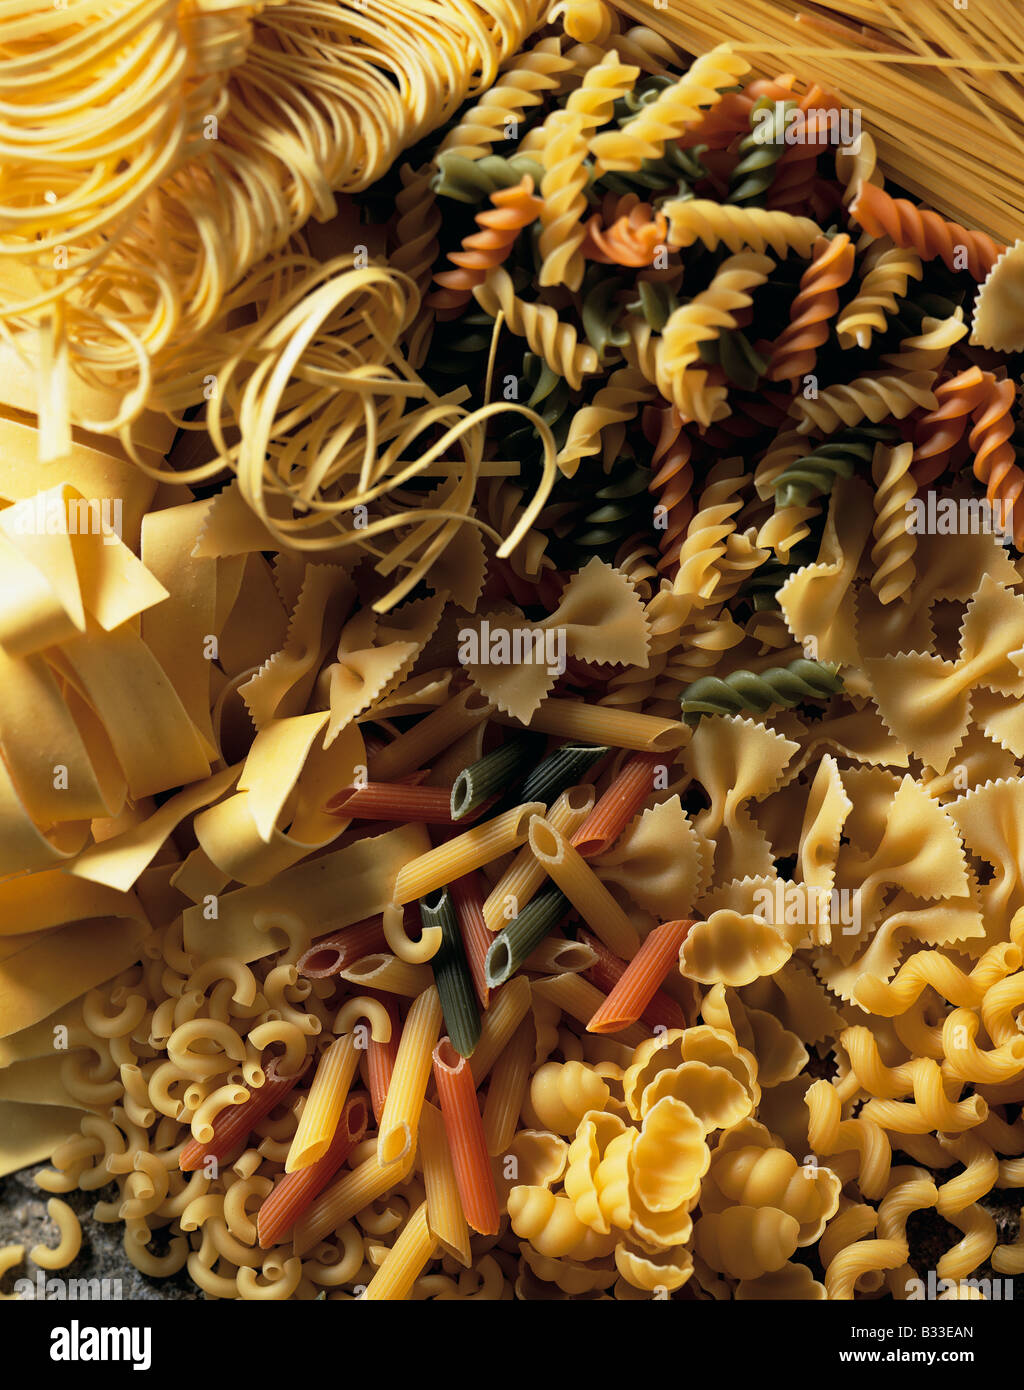 Ancora vita italiano di pasta secca alimentare editoriale Foto Stock